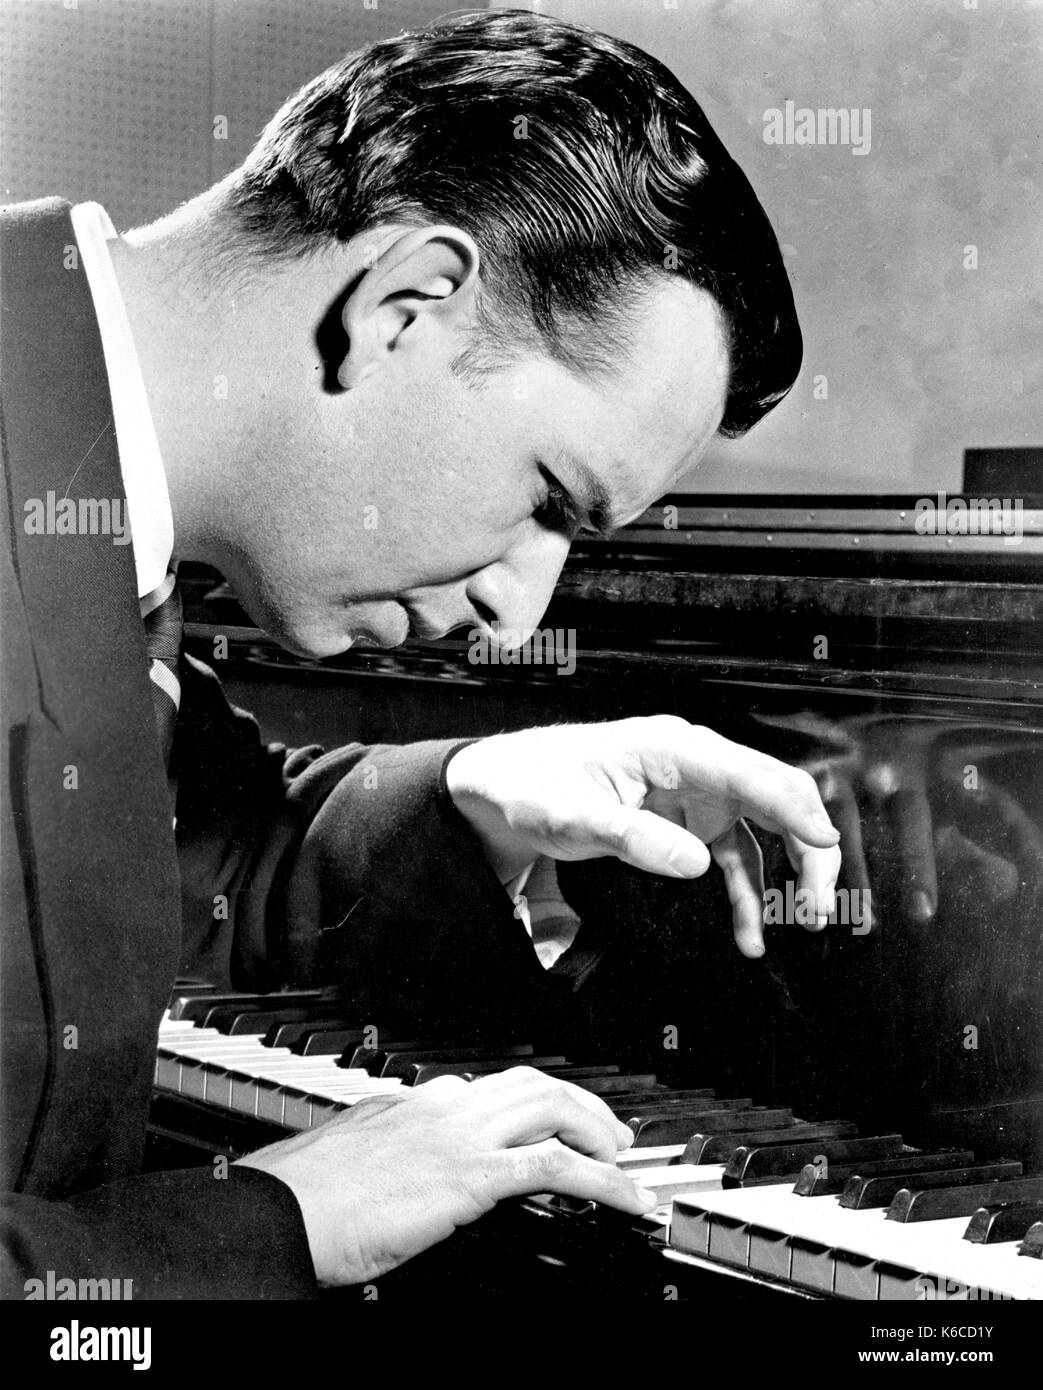 GRANT JOHANNESEN (1921-2005) Werbefoto amerikanischer Konzertpianist ungefähr 1955. Foto: Olaf Ranum Stockfoto